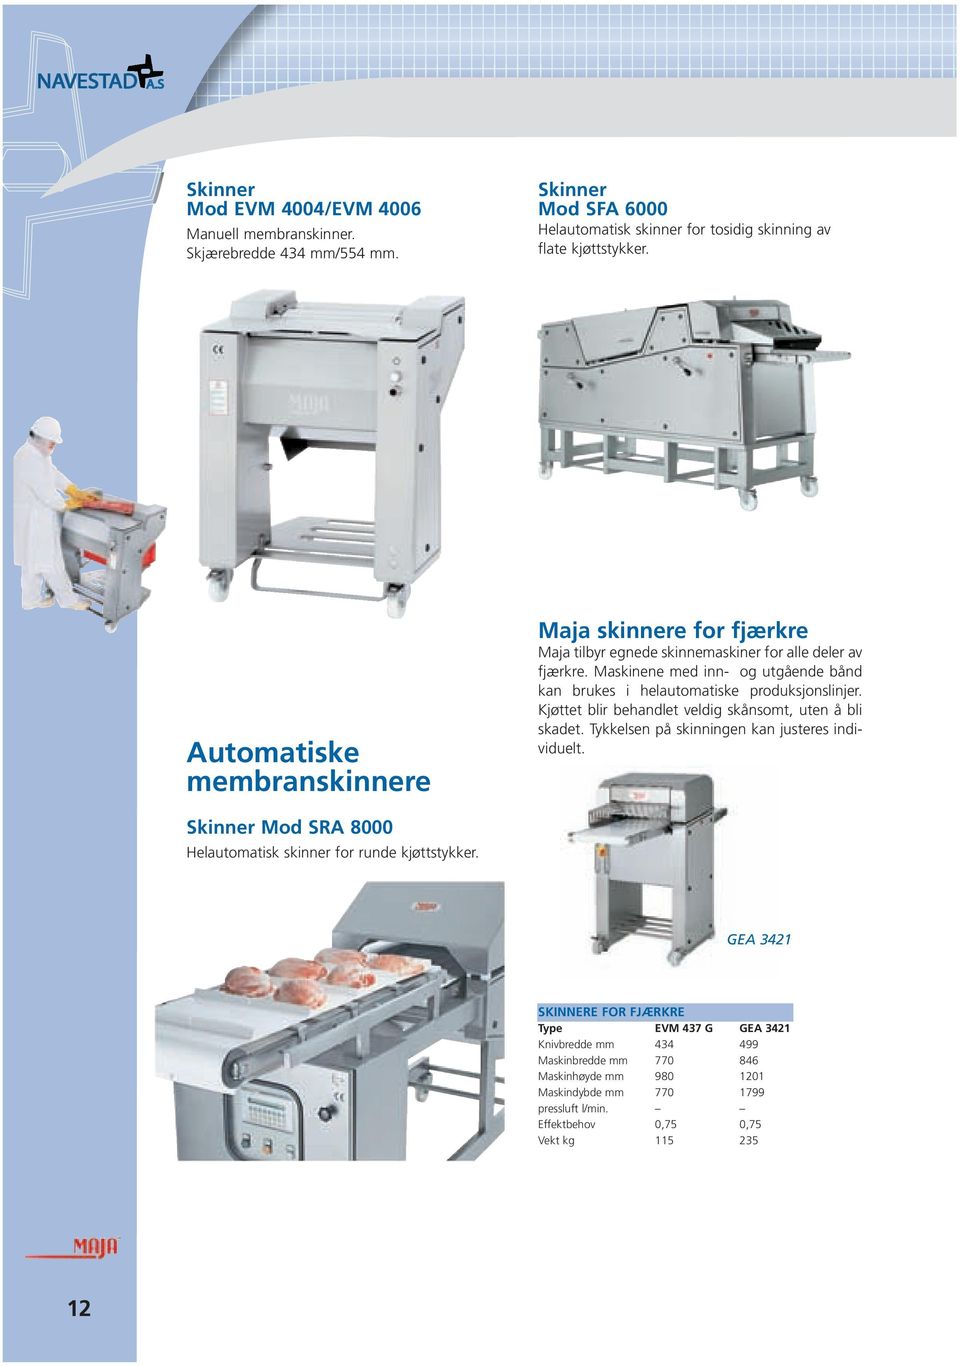 Maskinene med inn- og utgående bånd kan brukes i helautomatiske produksjonslinjer. Kjøttet blir behandlet veldig skånsomt, uten å bli skadet.